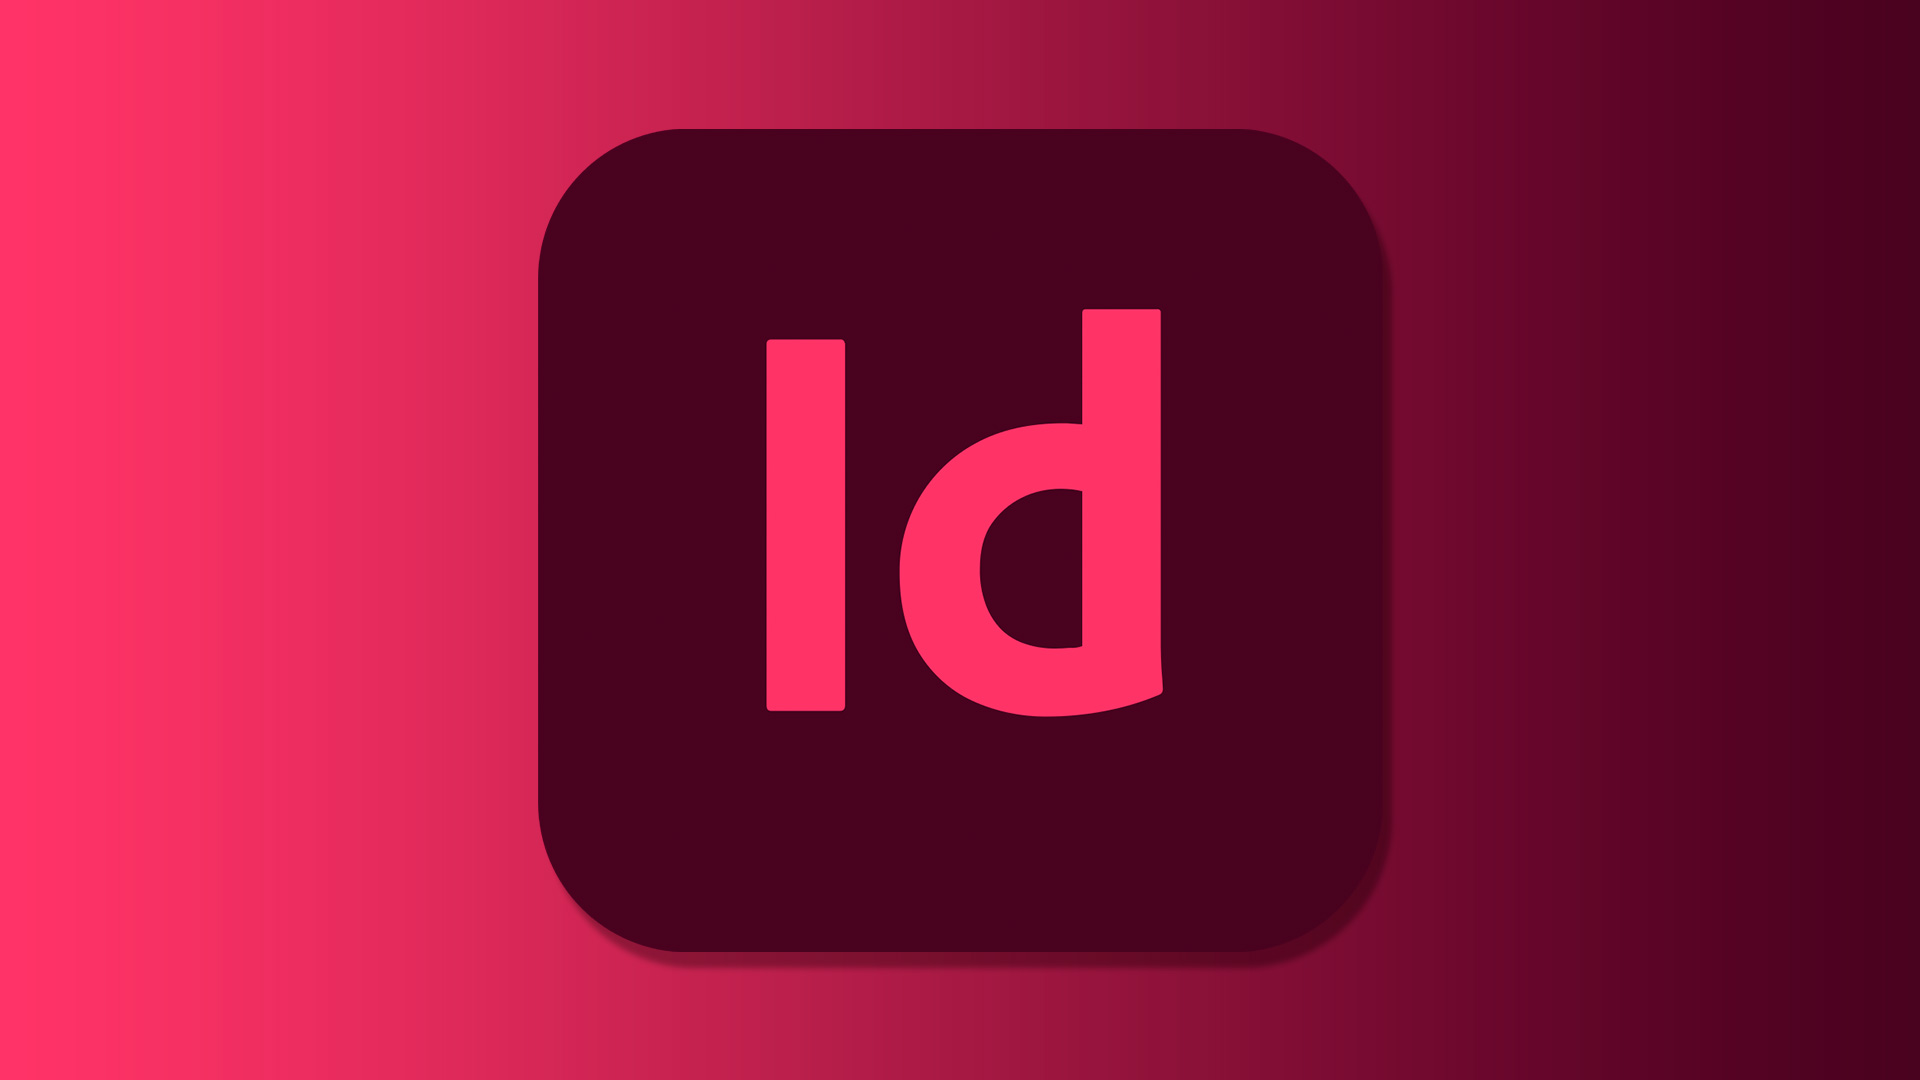 Adobe Indesign - AP-Consulting